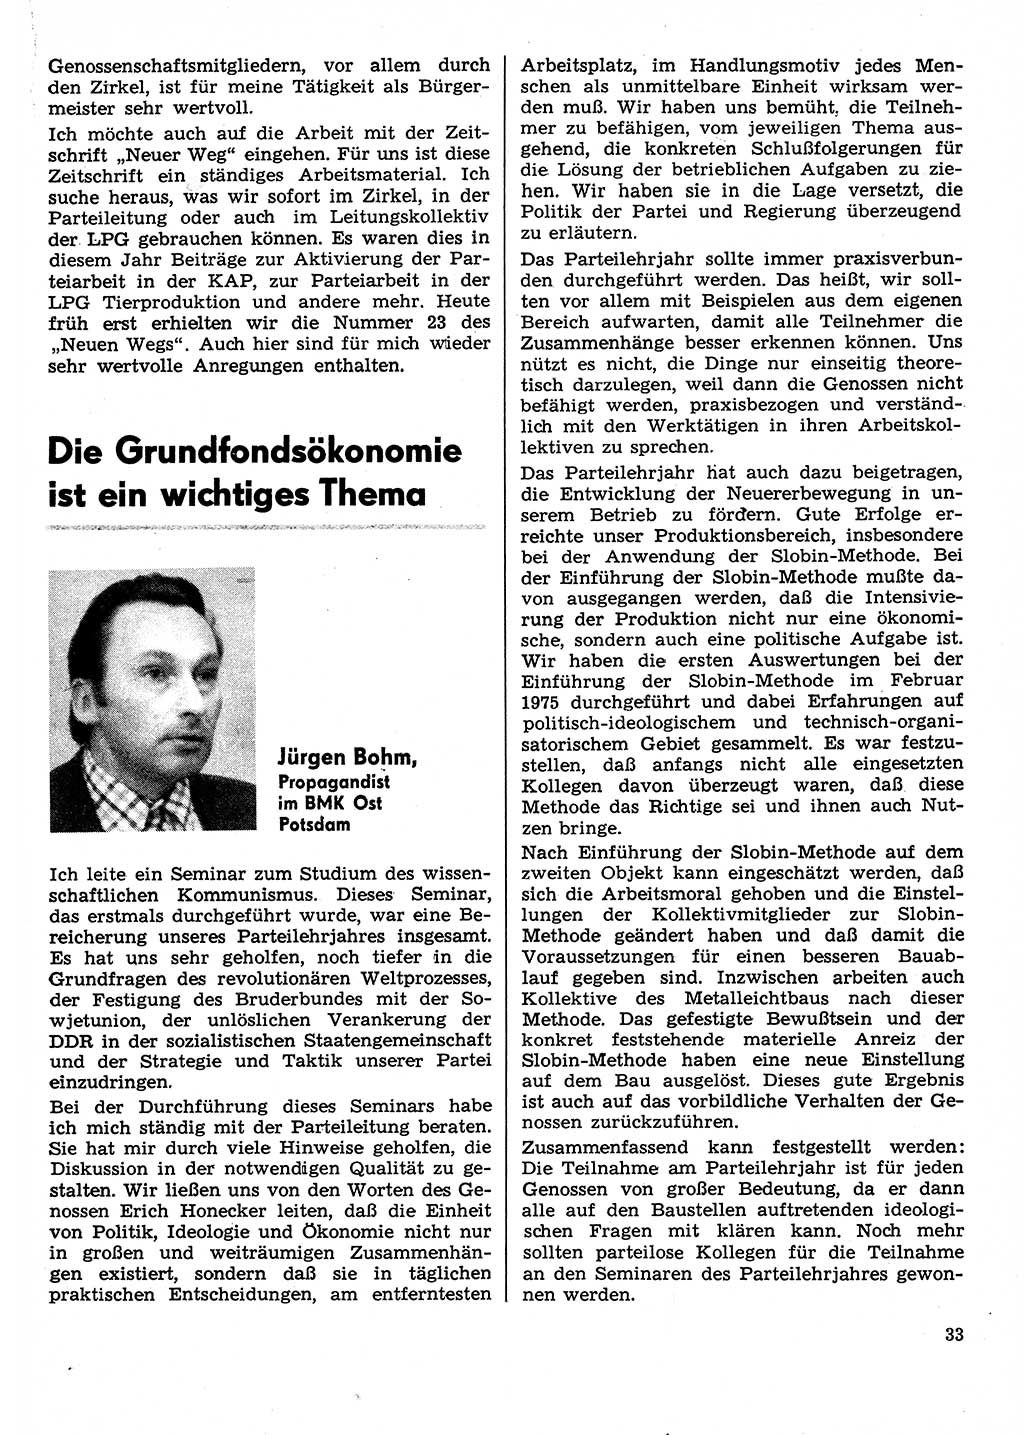 Neuer Weg (NW), Organ des Zentralkomitees (ZK) der SED (Sozialistische Einheitspartei Deutschlands) für Fragen des Parteilebens, 31. Jahrgang [Deutsche Demokratische Republik (DDR)] 1976, Seite 33 (NW ZK SED DDR 1976, S. 33)